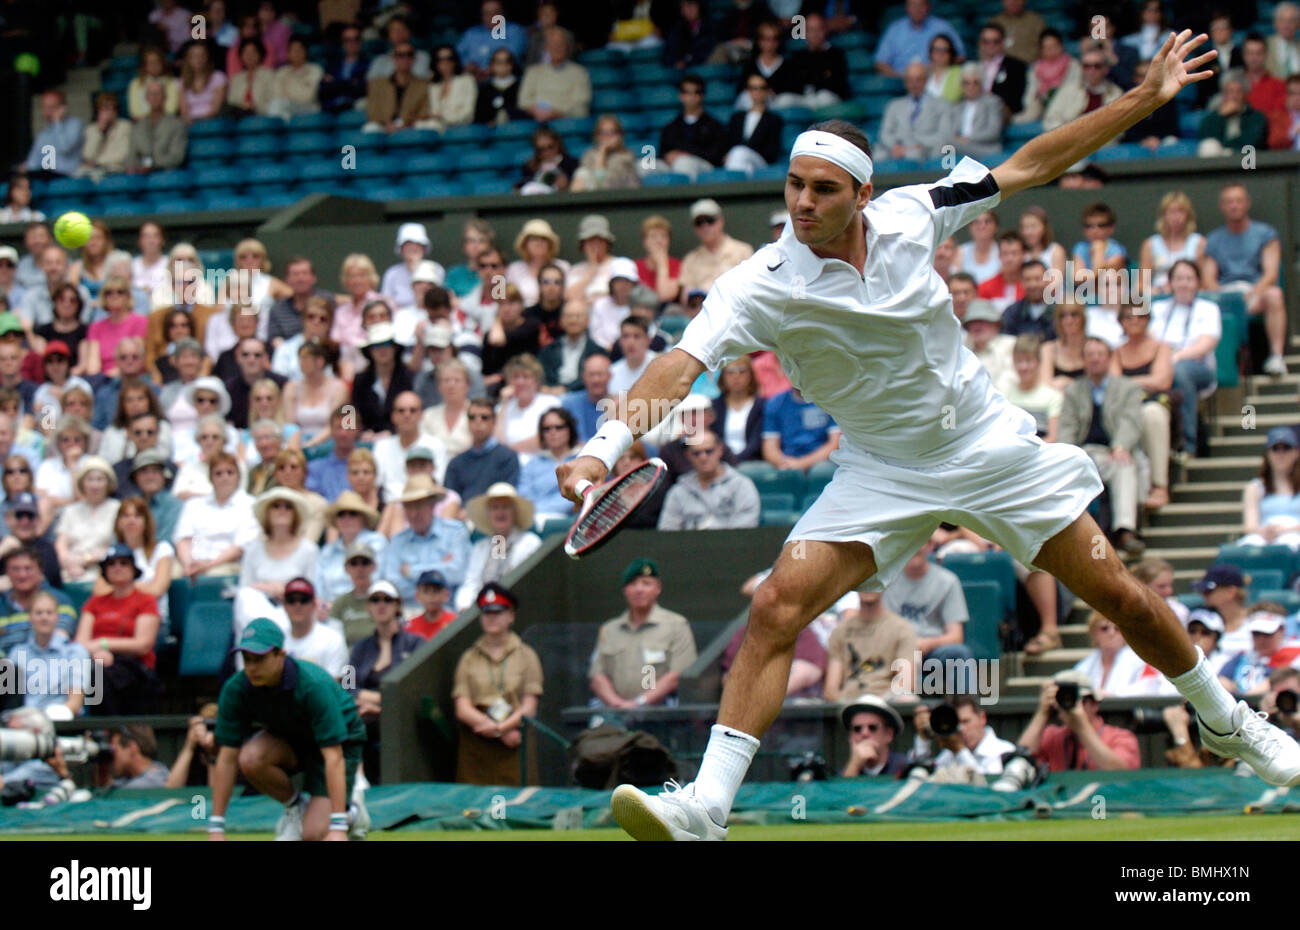 Roger Federer (Suisse) joue un coup à Wimbledon 2004 Banque D'Images